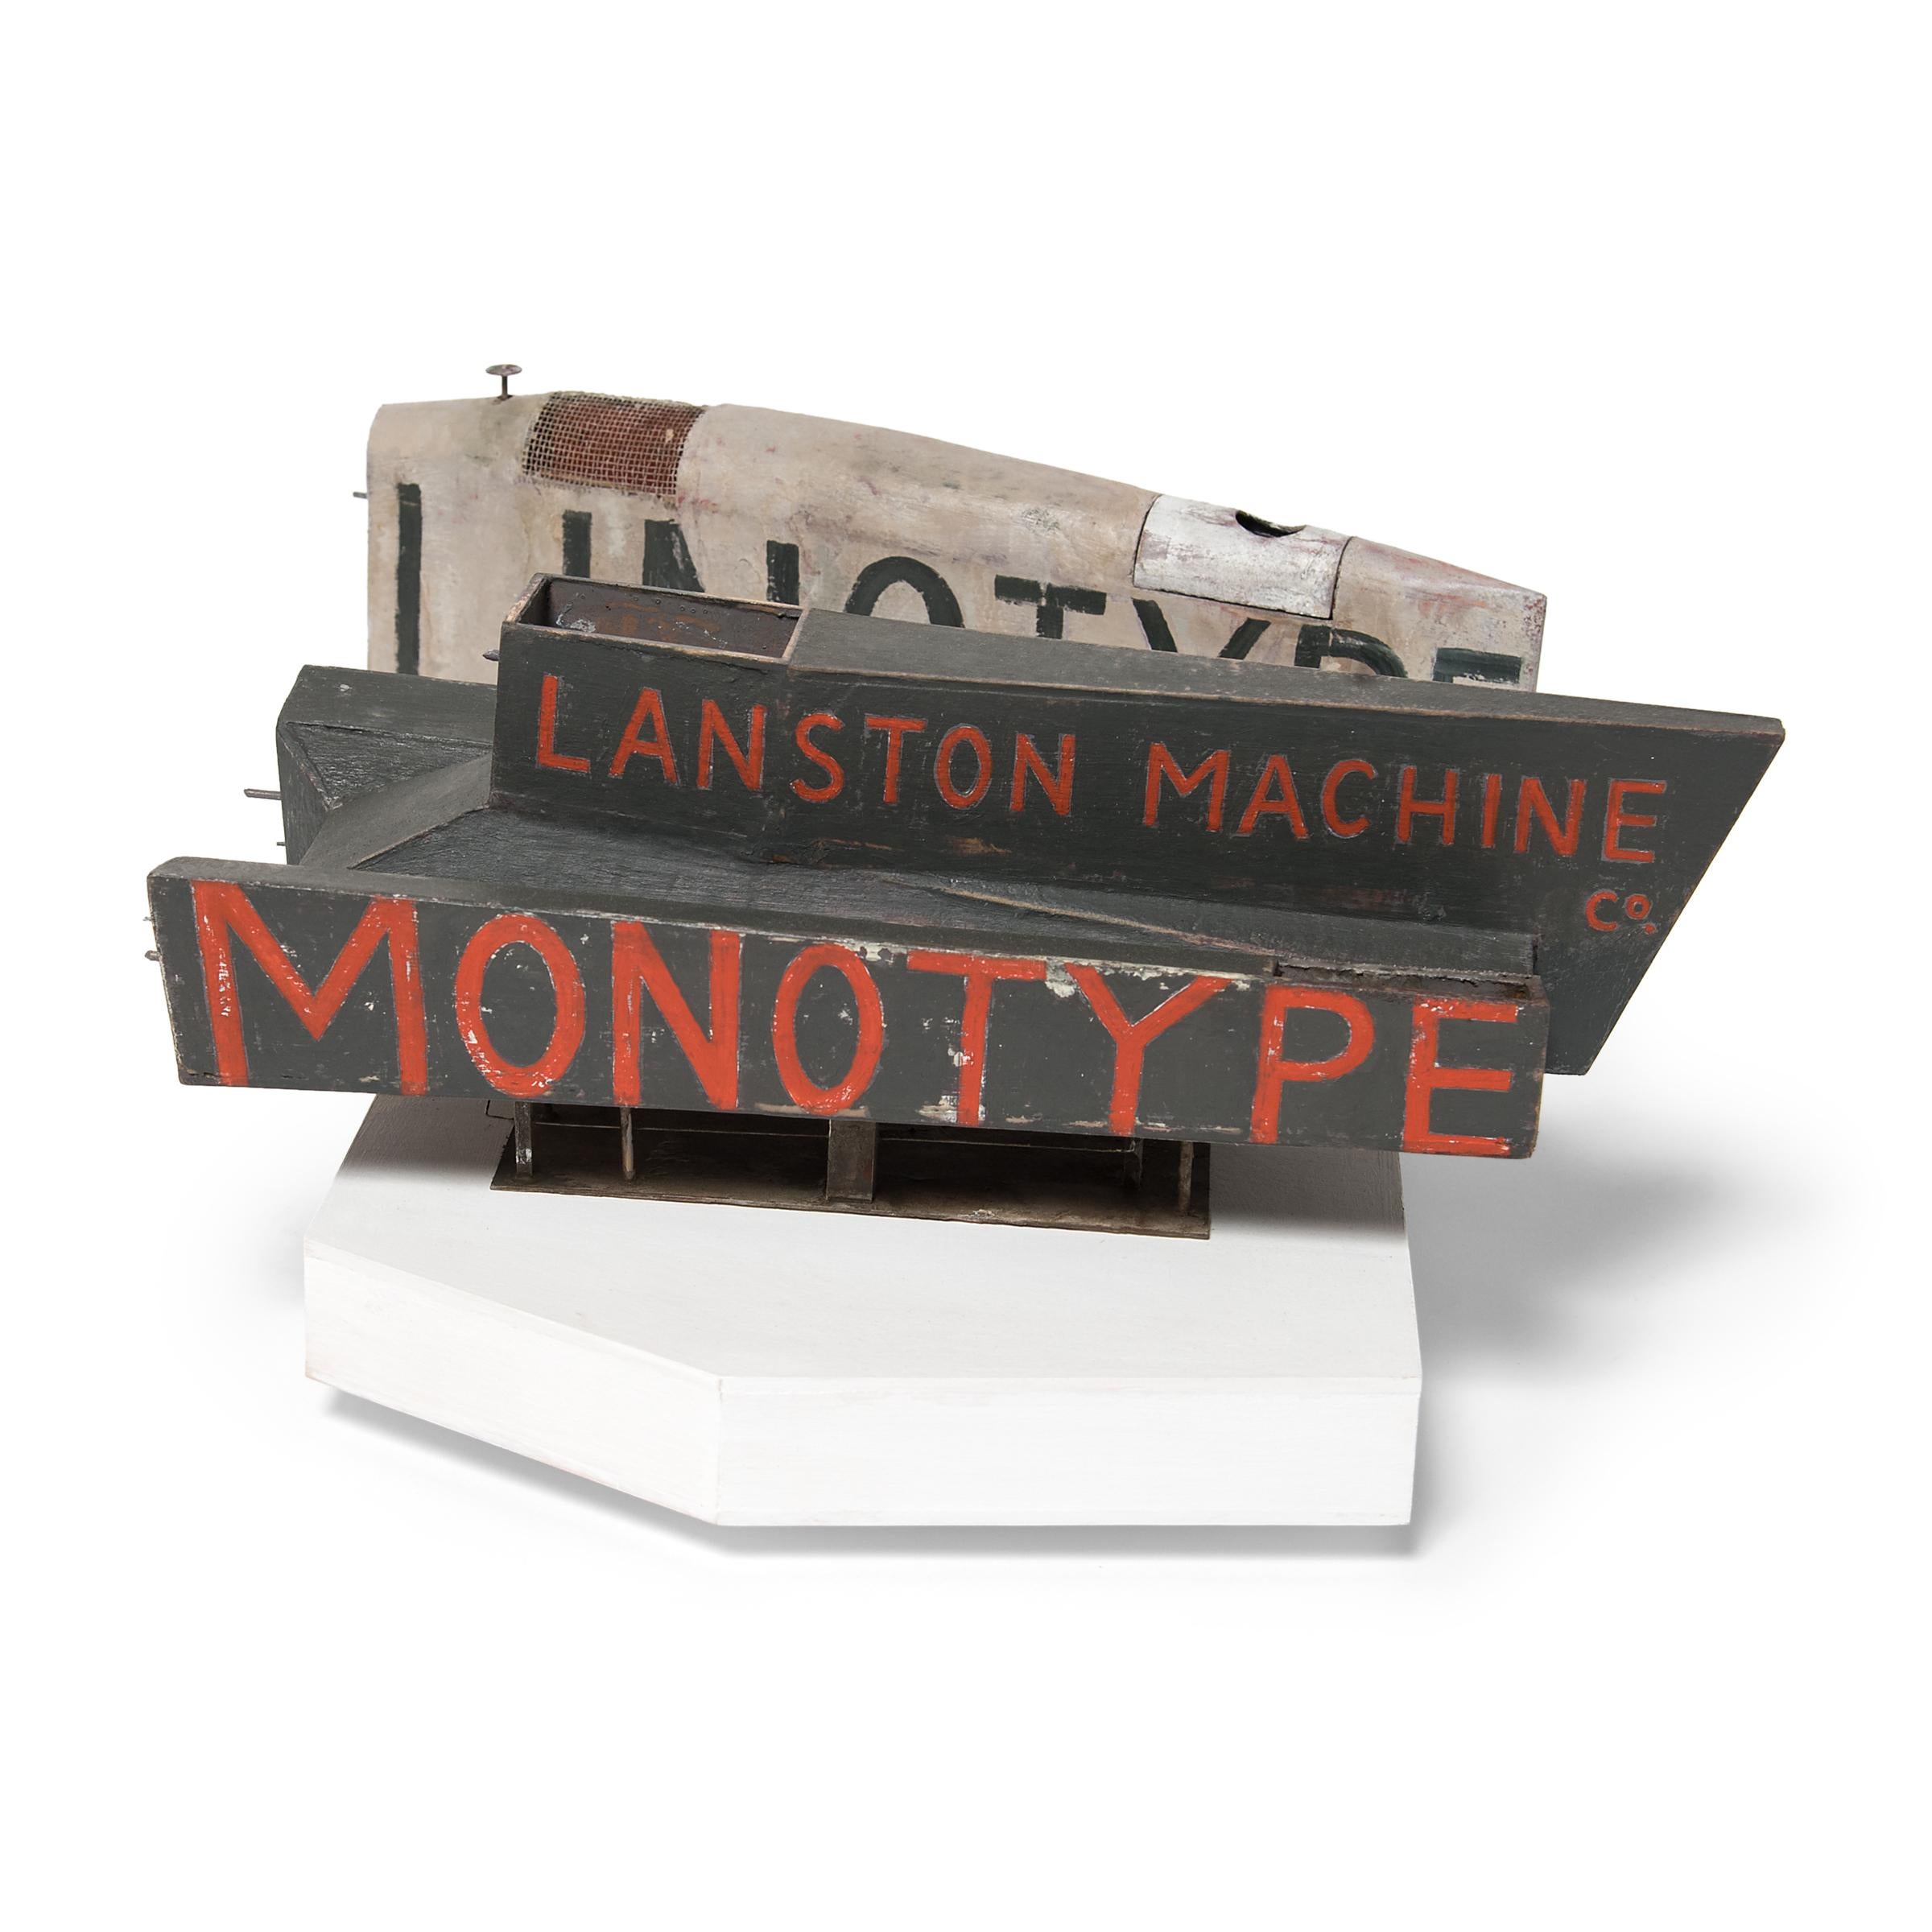 linotype vs monotype